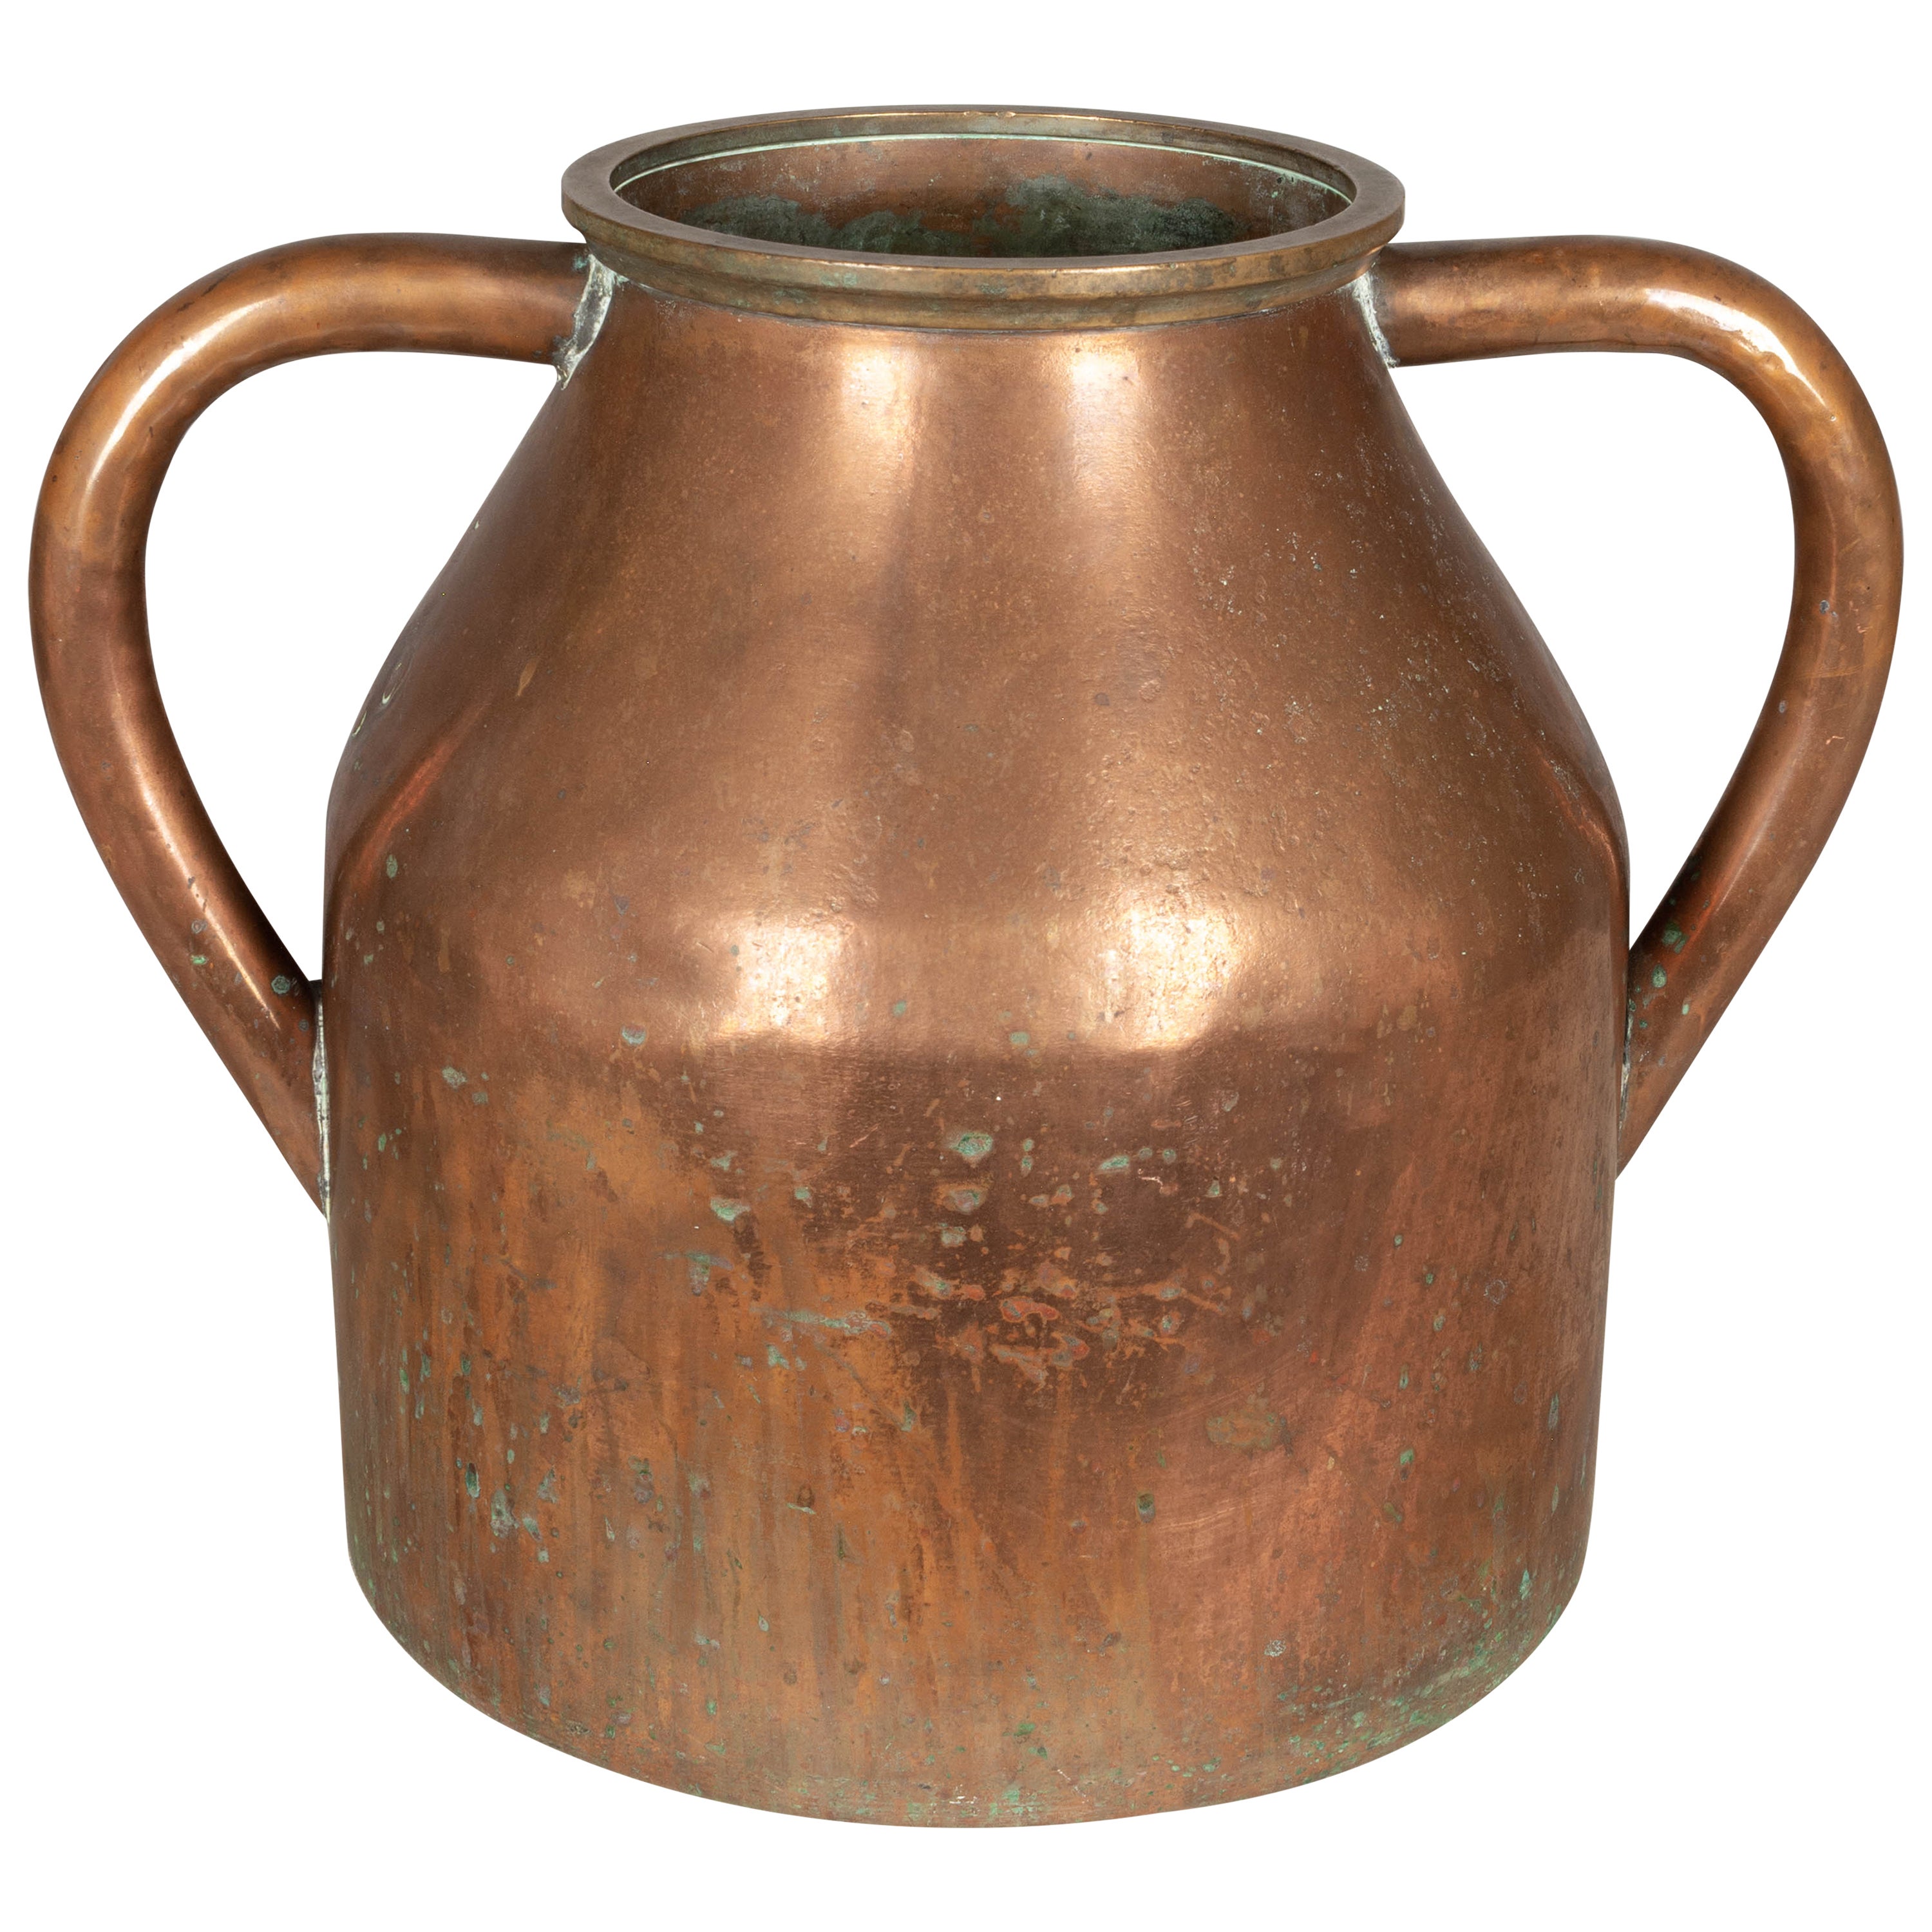 Grand pichet ou vase en cuivre français du 19ème siècle